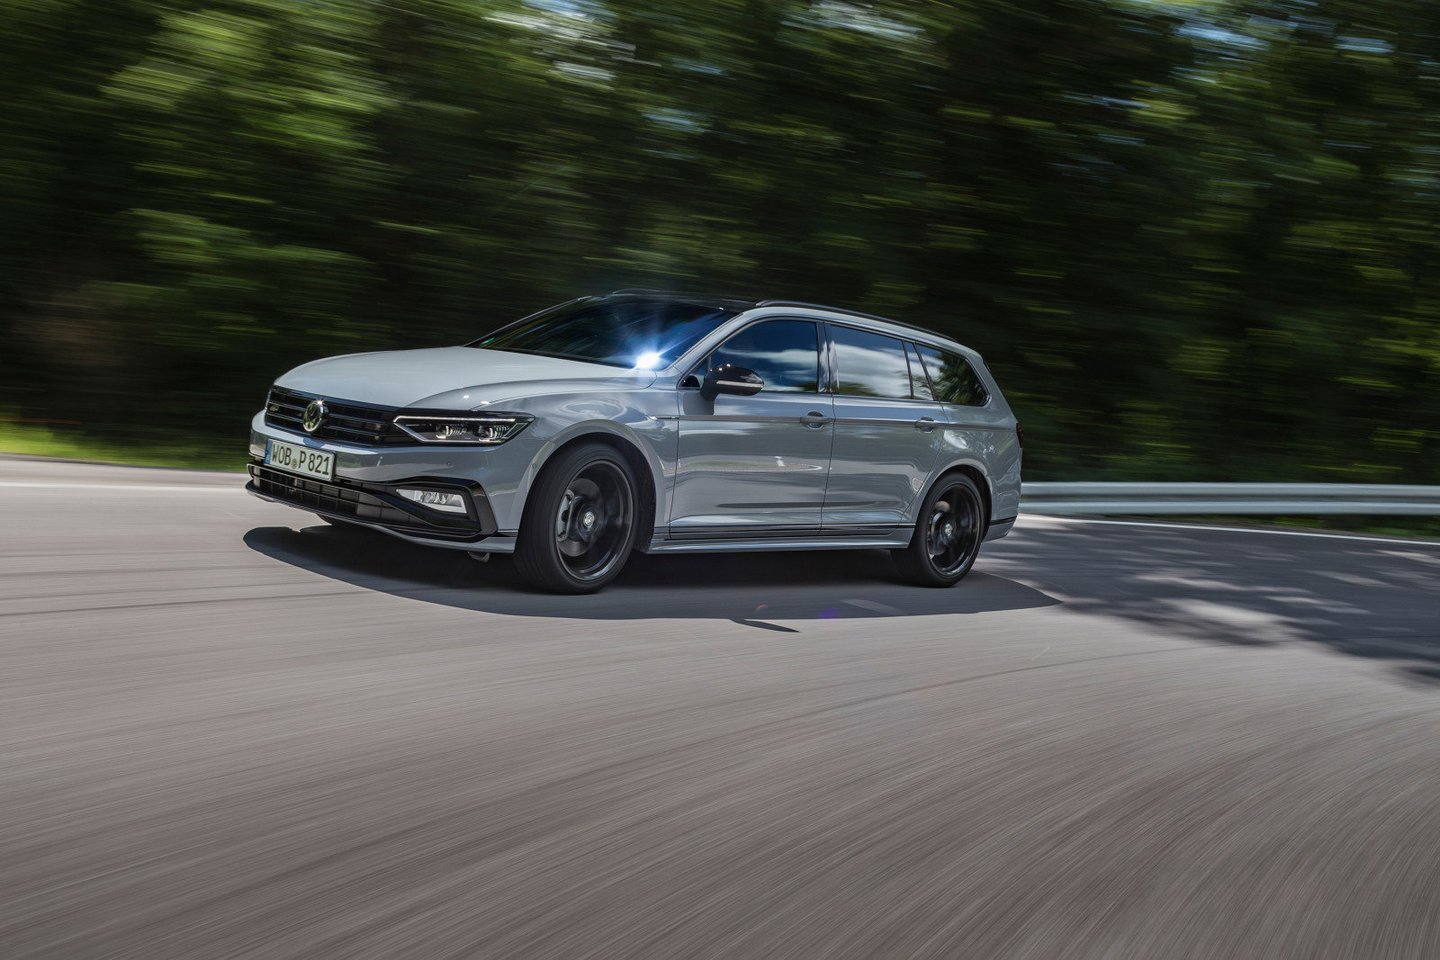  Pirmieji atnaujinti „Volkswagen Passat“ modeliai klientams bus pristatyti rugsėjį. <br> Gamintojo nuotr.